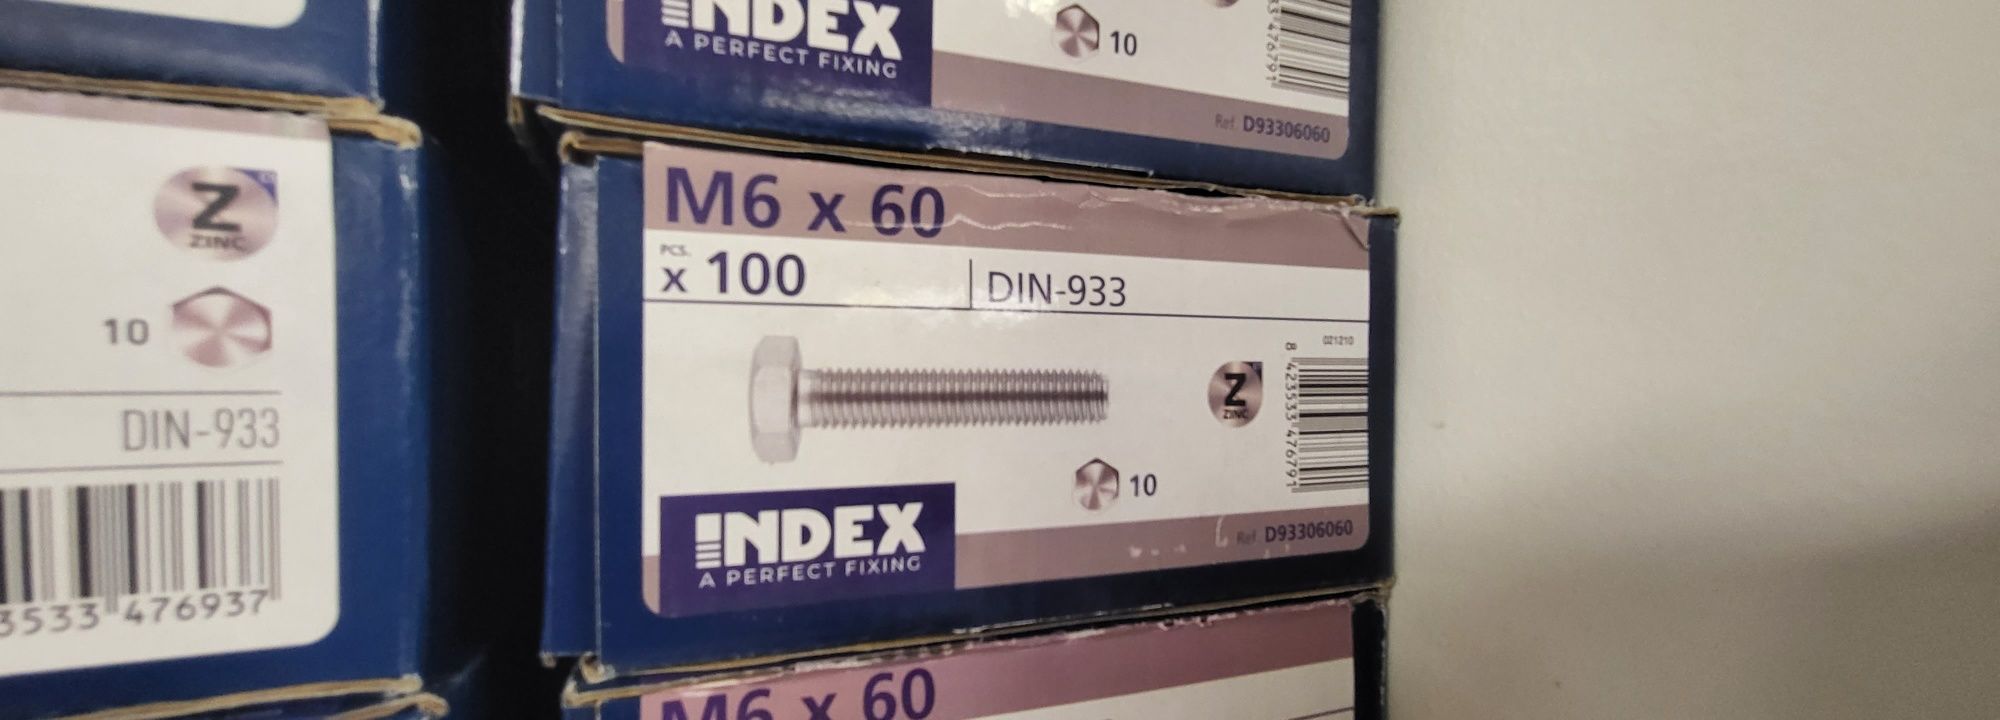 Caixa parafusos index M6x60 M6x70 M8x70